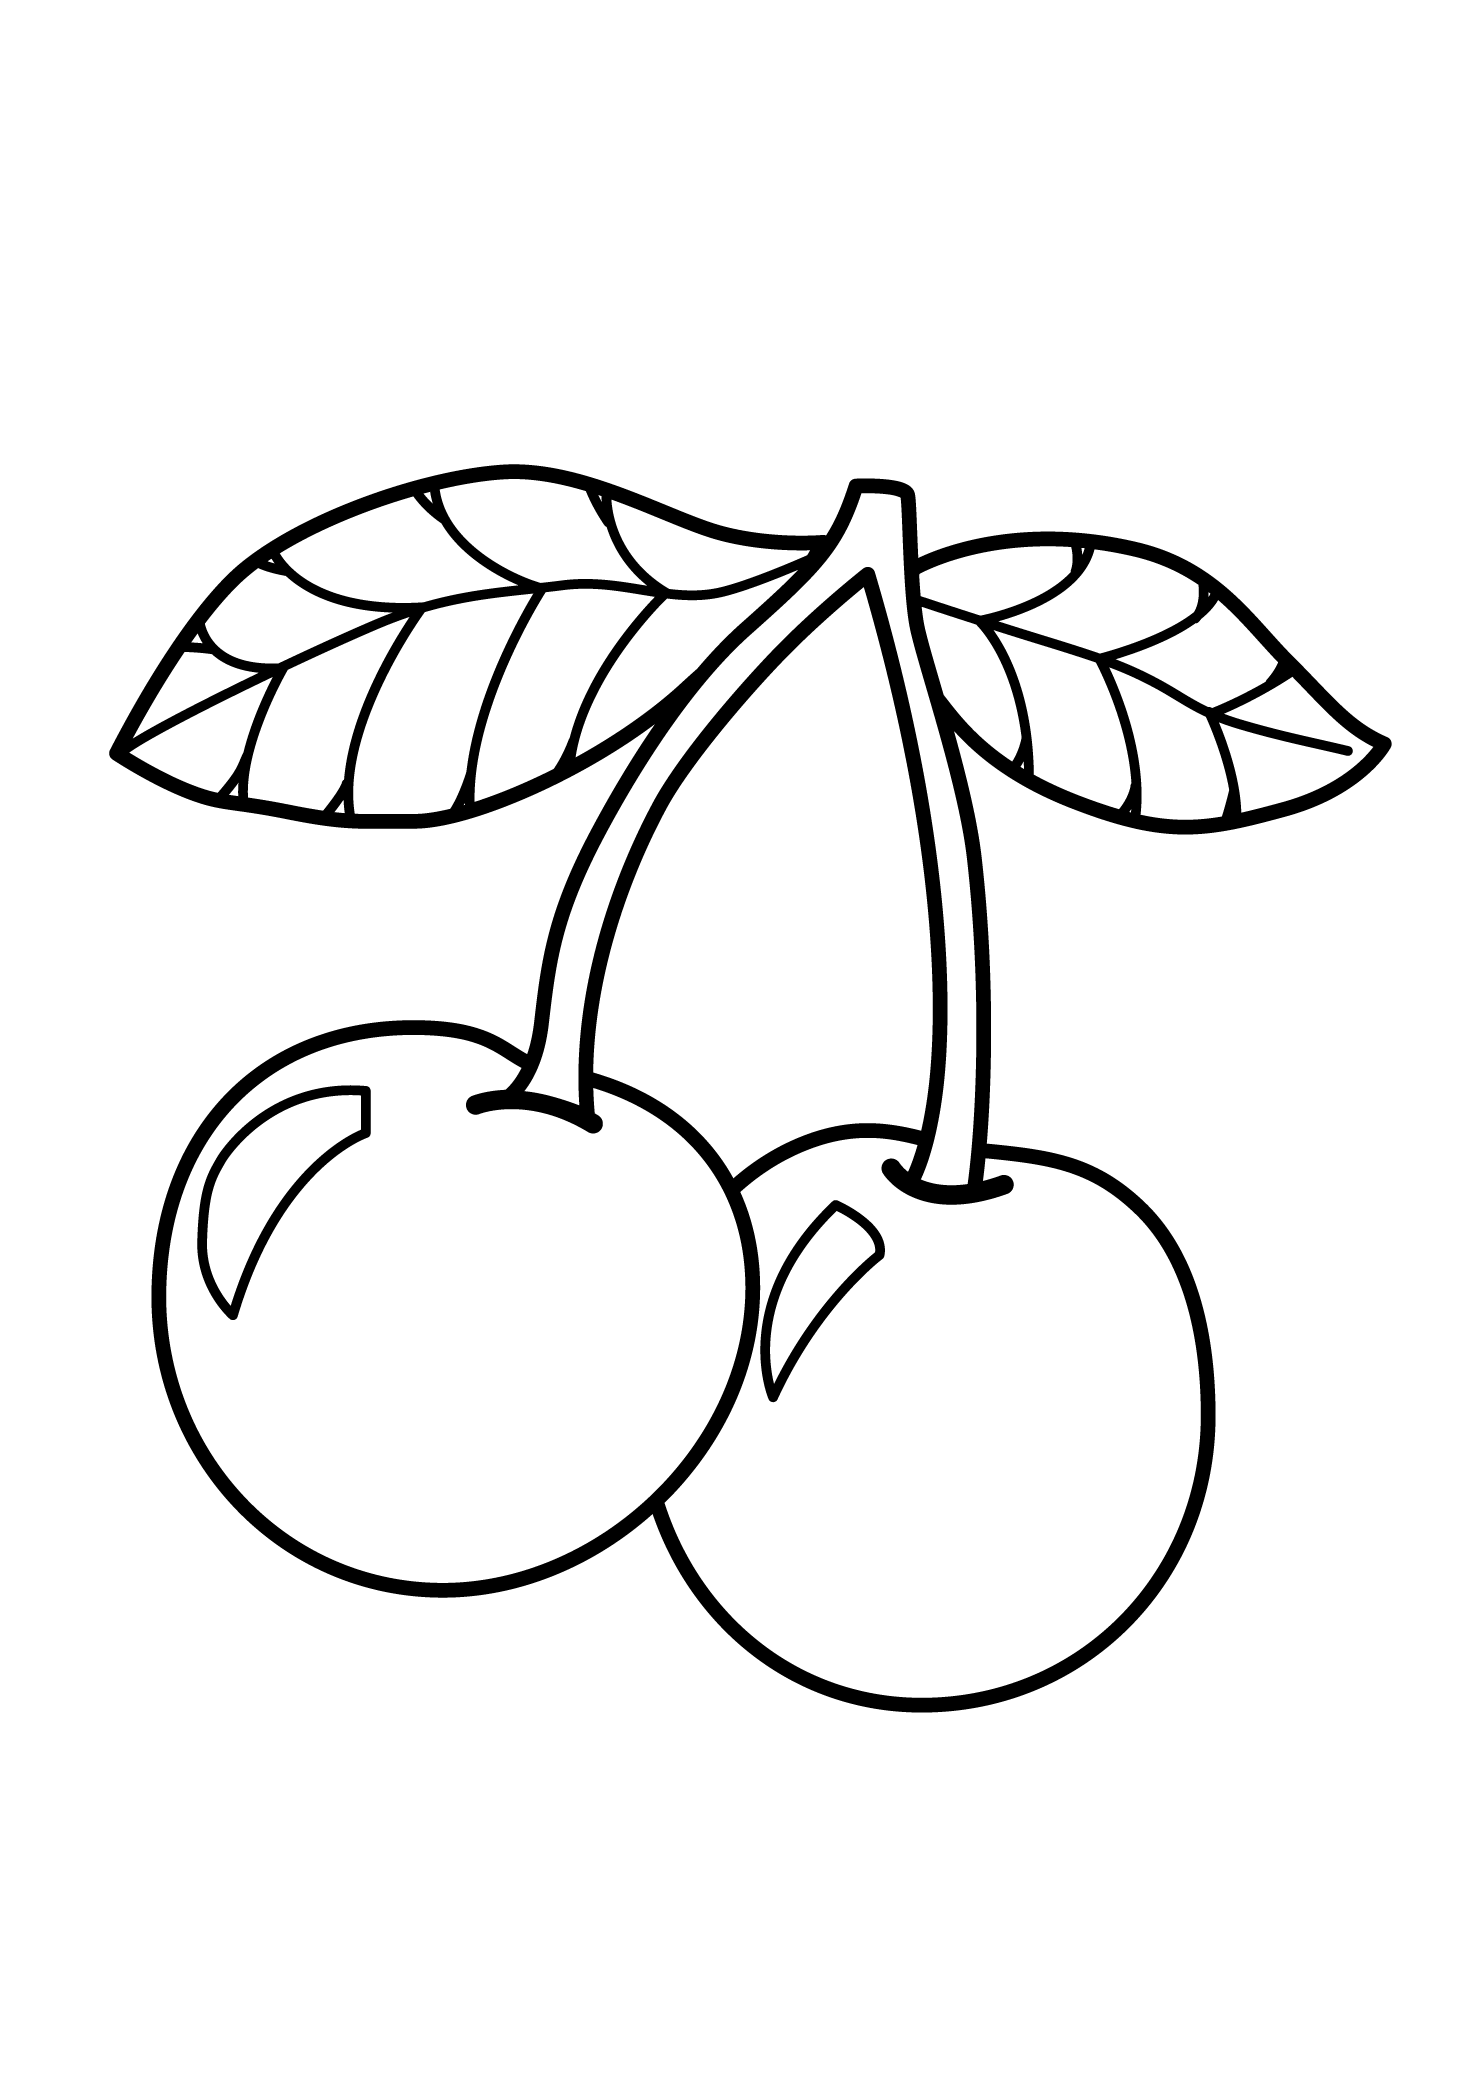 Desenho de Cerejas para Colorir - Frutas para Imprimir e Pintar